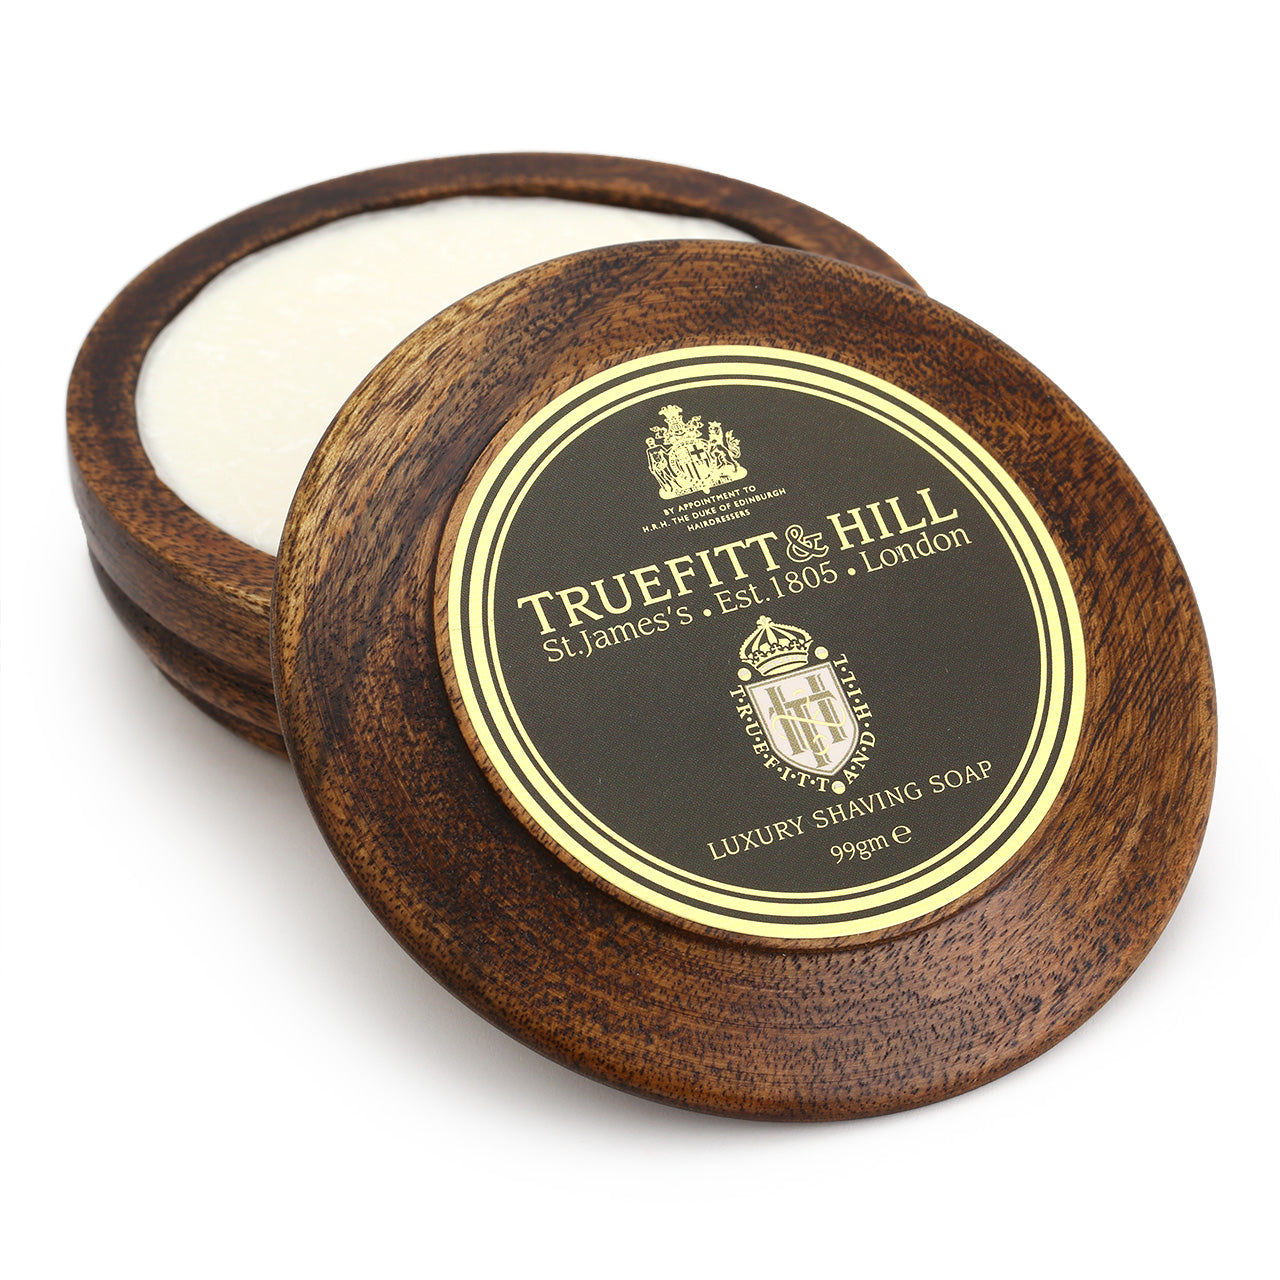 Truefitt & Hill Luxury shaving soap in a wooden bowl